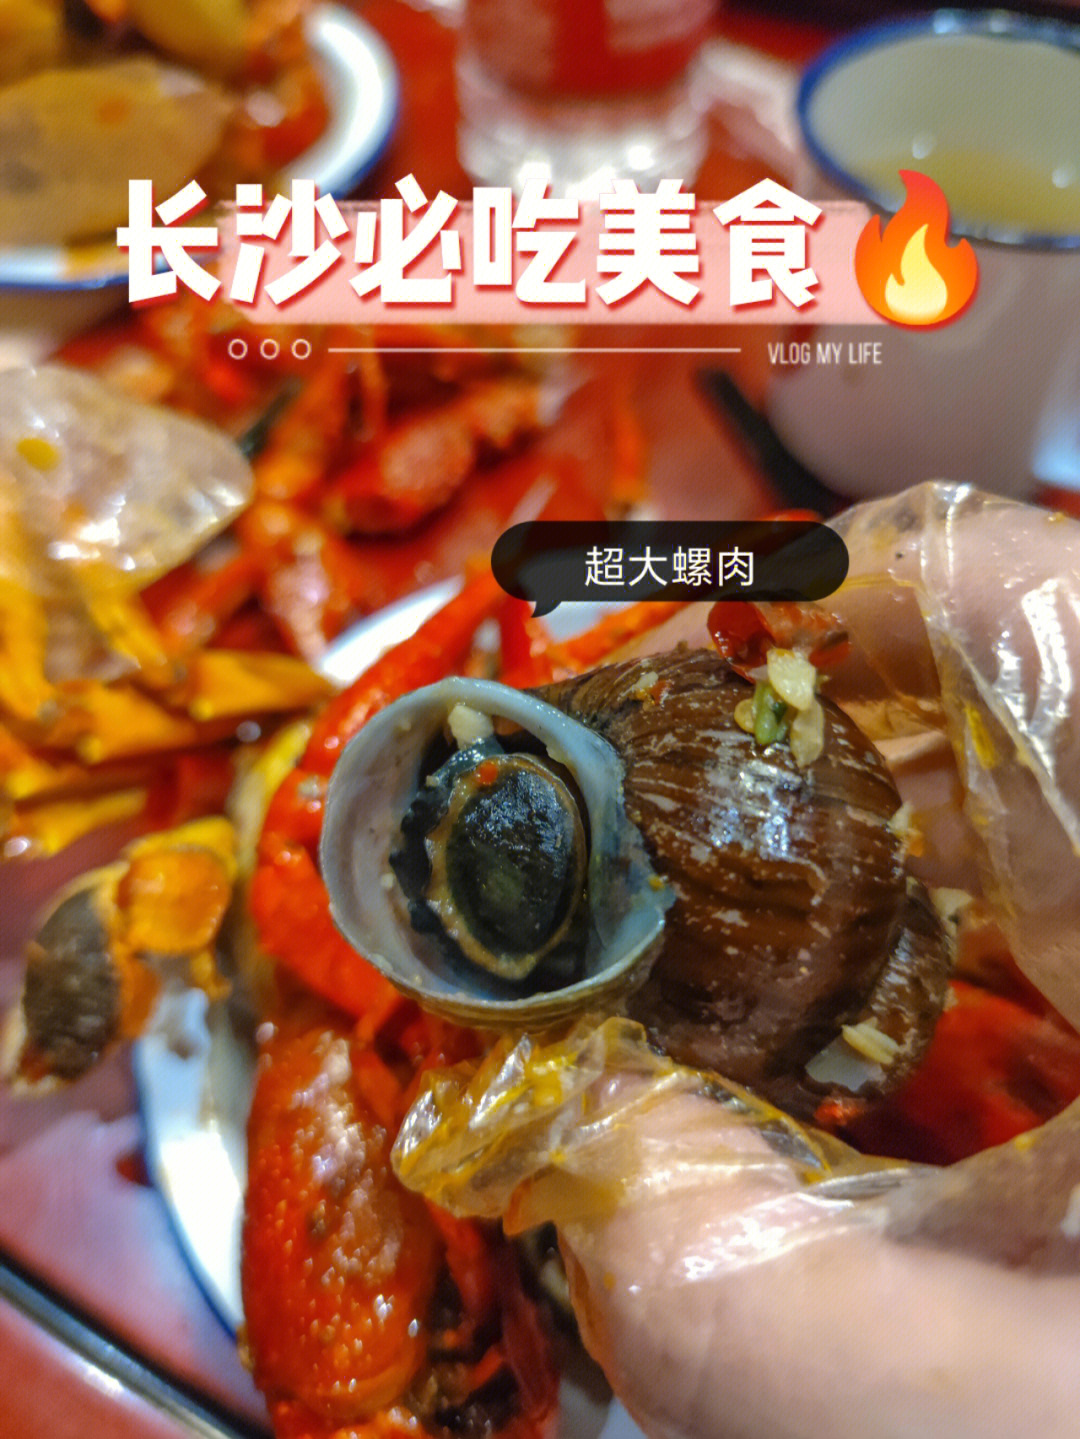 长沙四娭毑口味虾图片